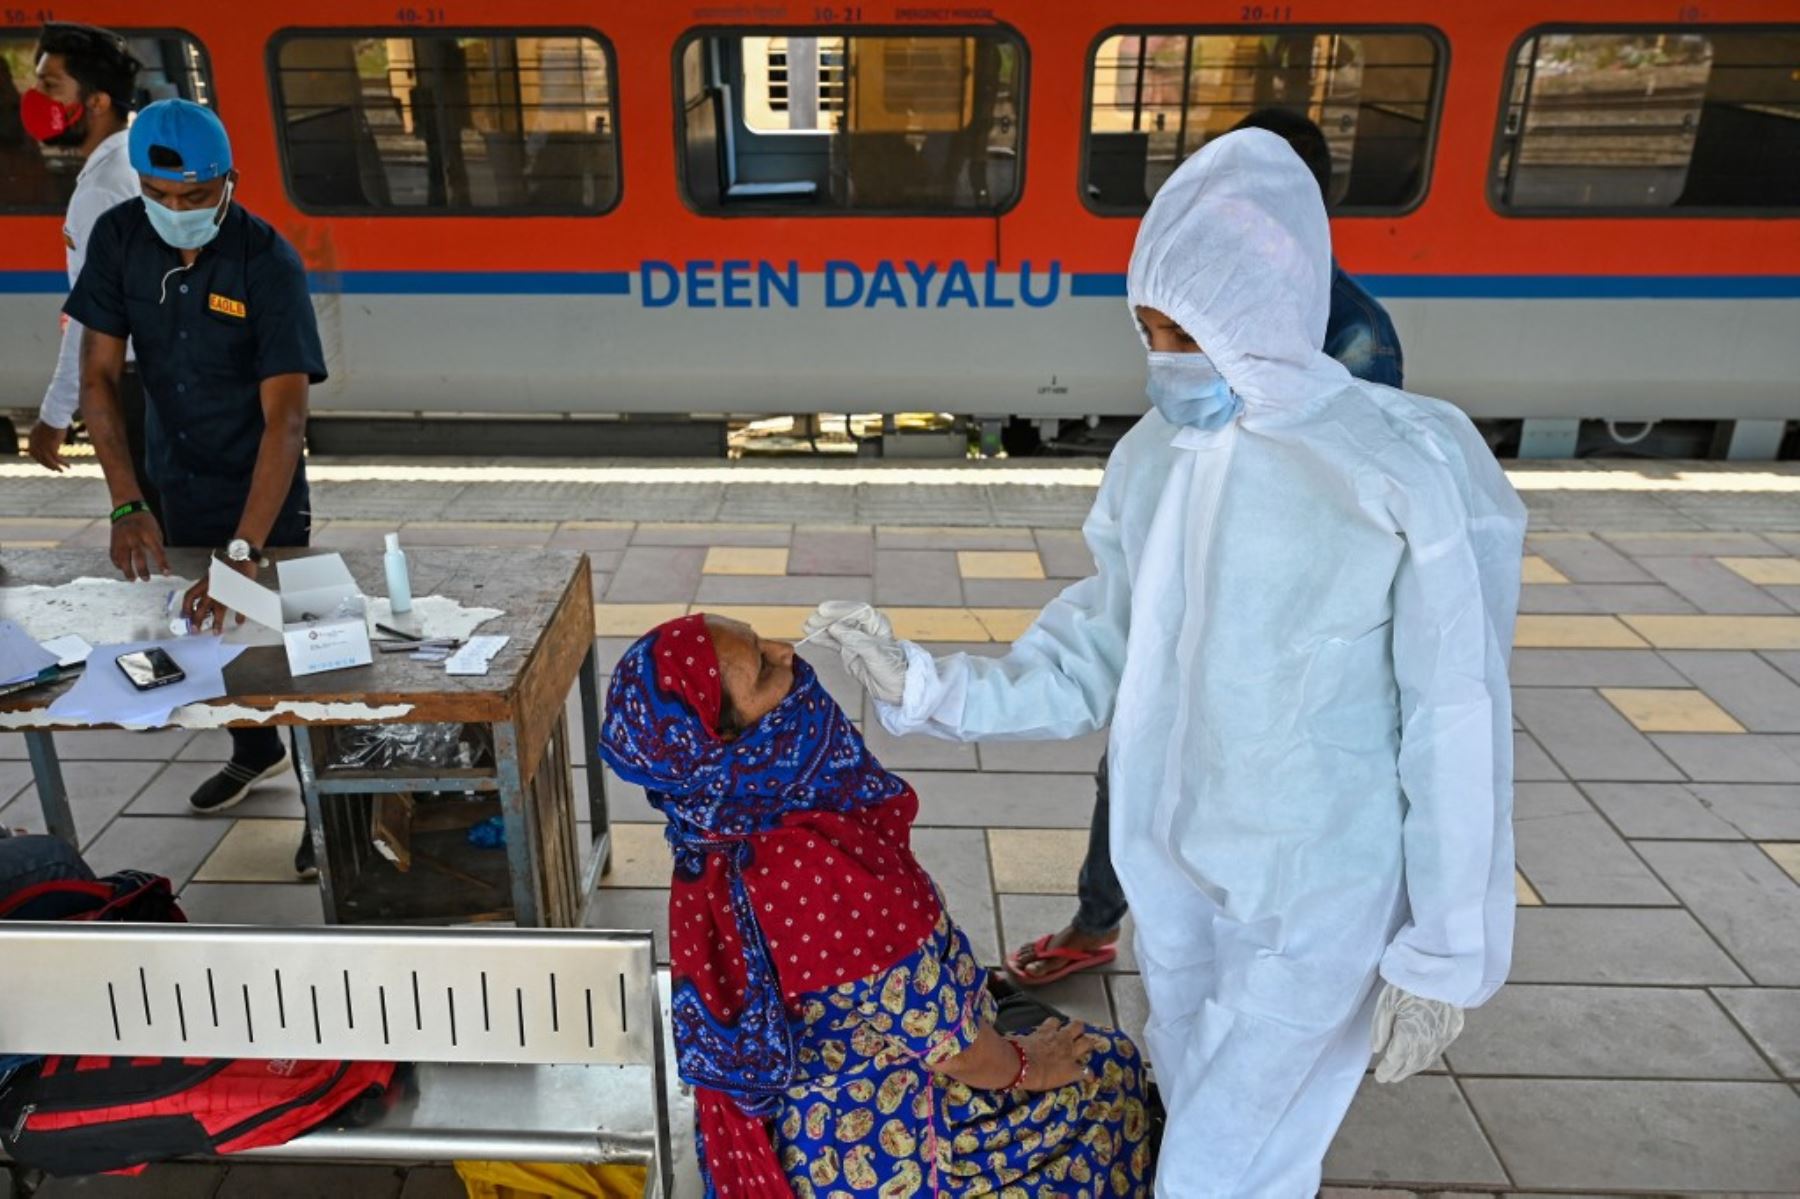 Un trabajador de la salud toma una muestra de hisopado nasal de un pasajero para la prueba del coronavirus covid-19 después de llegar a una plataforma ferroviaria en un tren de larga distancia, en Mumbai, India. Foto: AFP